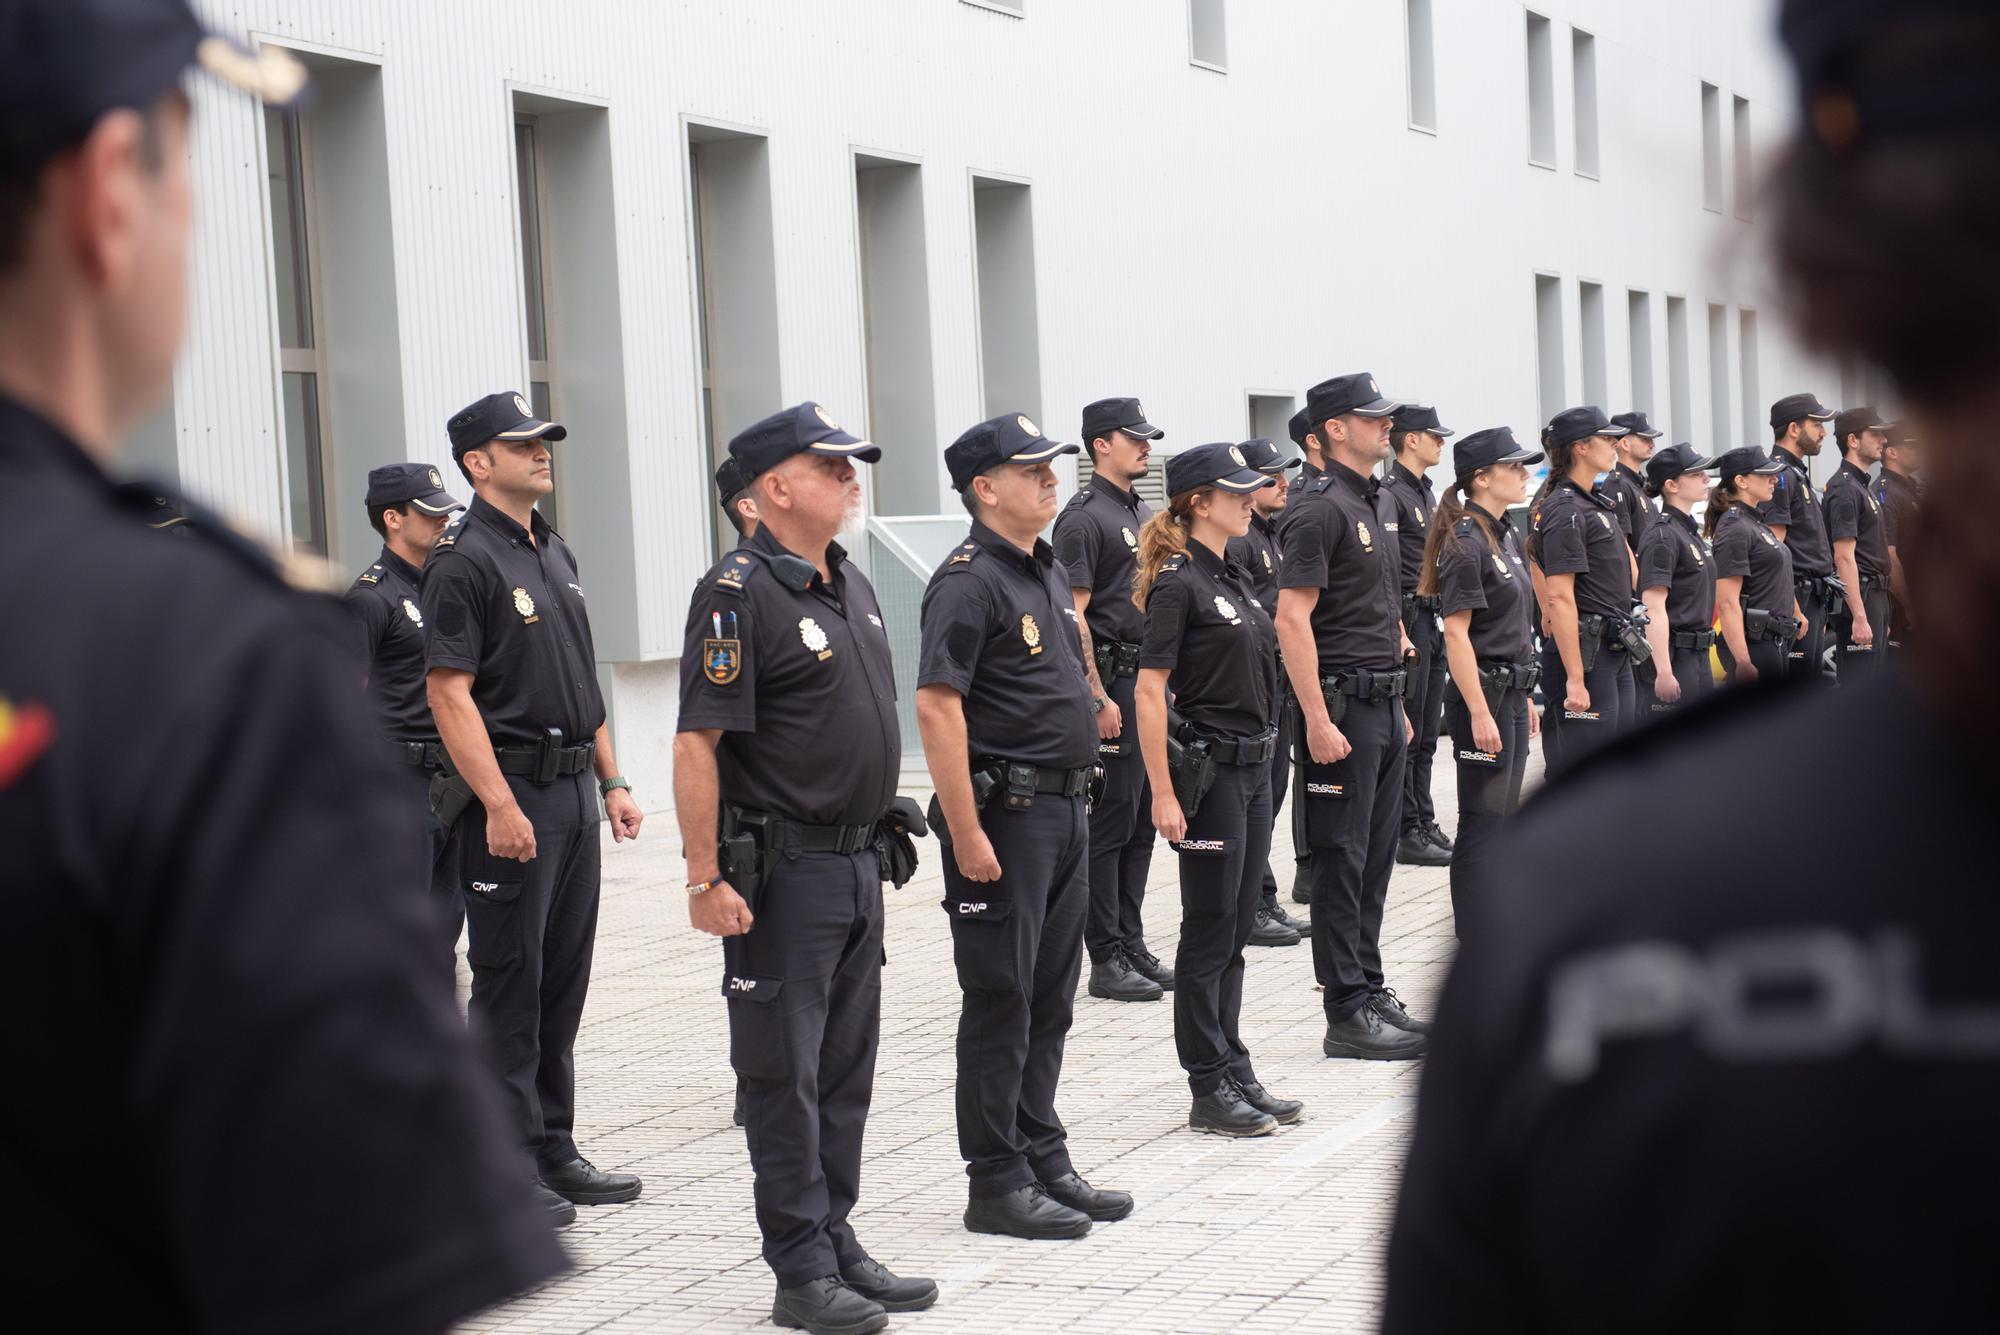 La comisaría de Lonzas de A Coruña recibe a 15 policías nacionales en prácticas